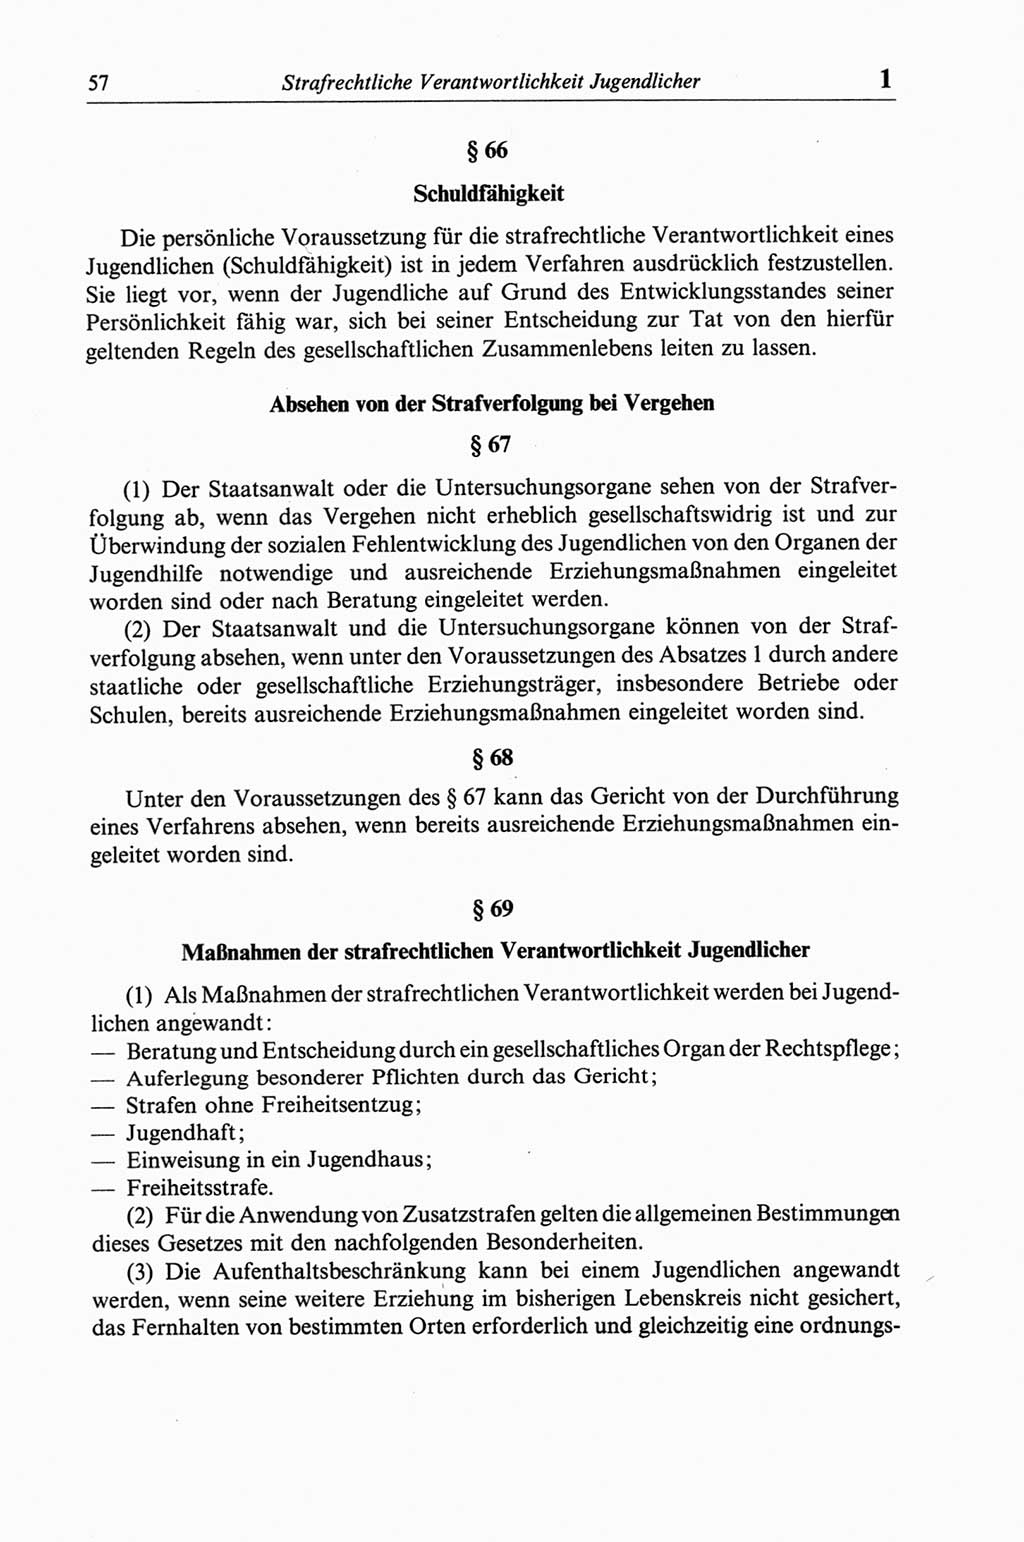 Strafgesetzbuch (StGB) der Deutschen Demokratischen Republik (DDR) und angrenzende Gesetze und Bestimmungen 1968, Seite 57 (StGB Ges. Best. DDR 1968, S. 57)